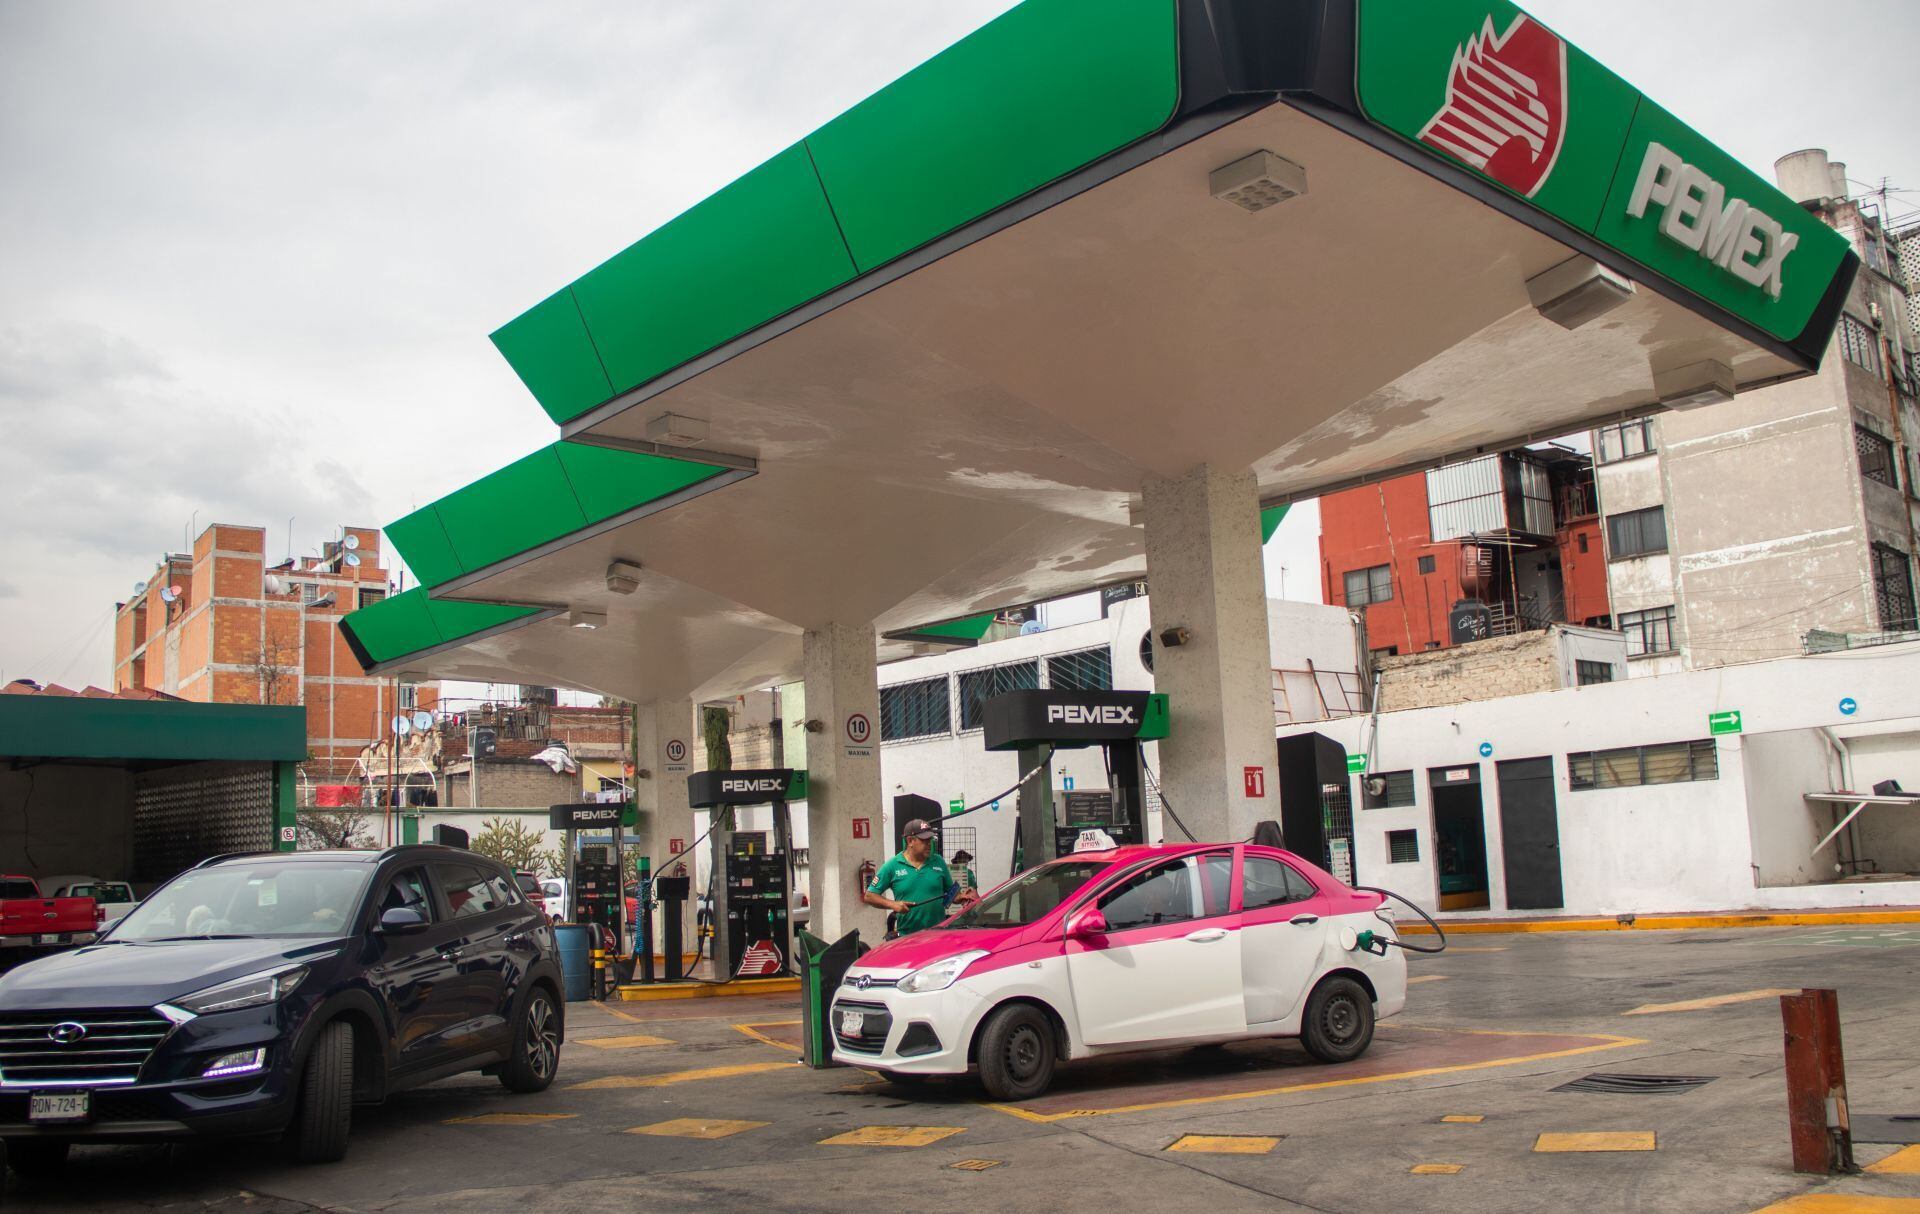 Encabeza Nuevo León la inversión en gasolineras